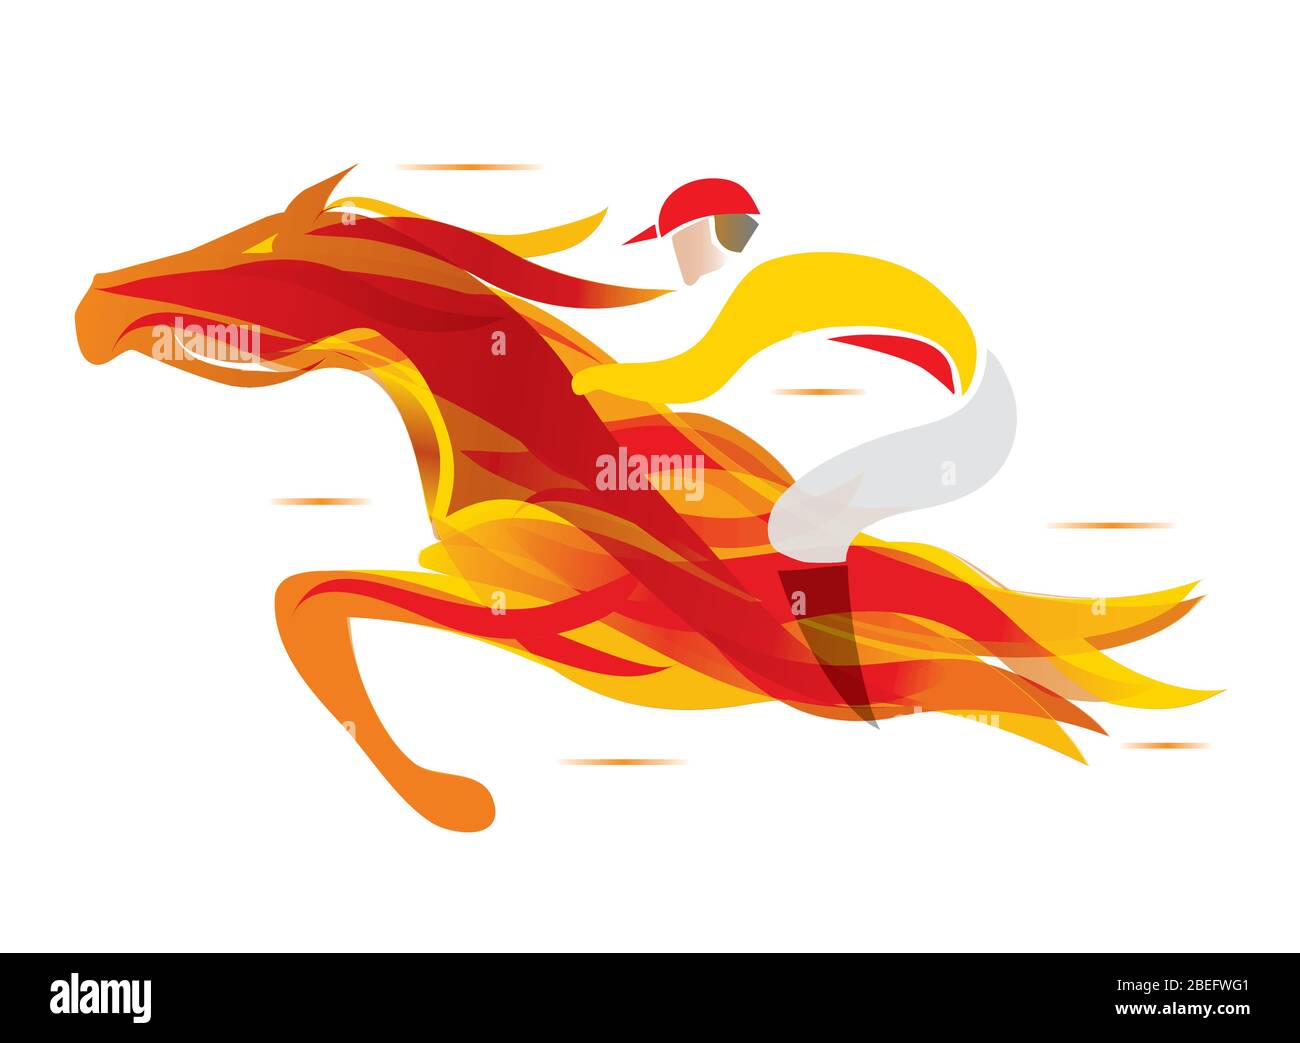 Feuriges Pferd mit Jockey. Bunte stilisierte Illustration von Jockey auf dem laufenden Feuerpferd. Vektor verfügbar. Stock Vektor